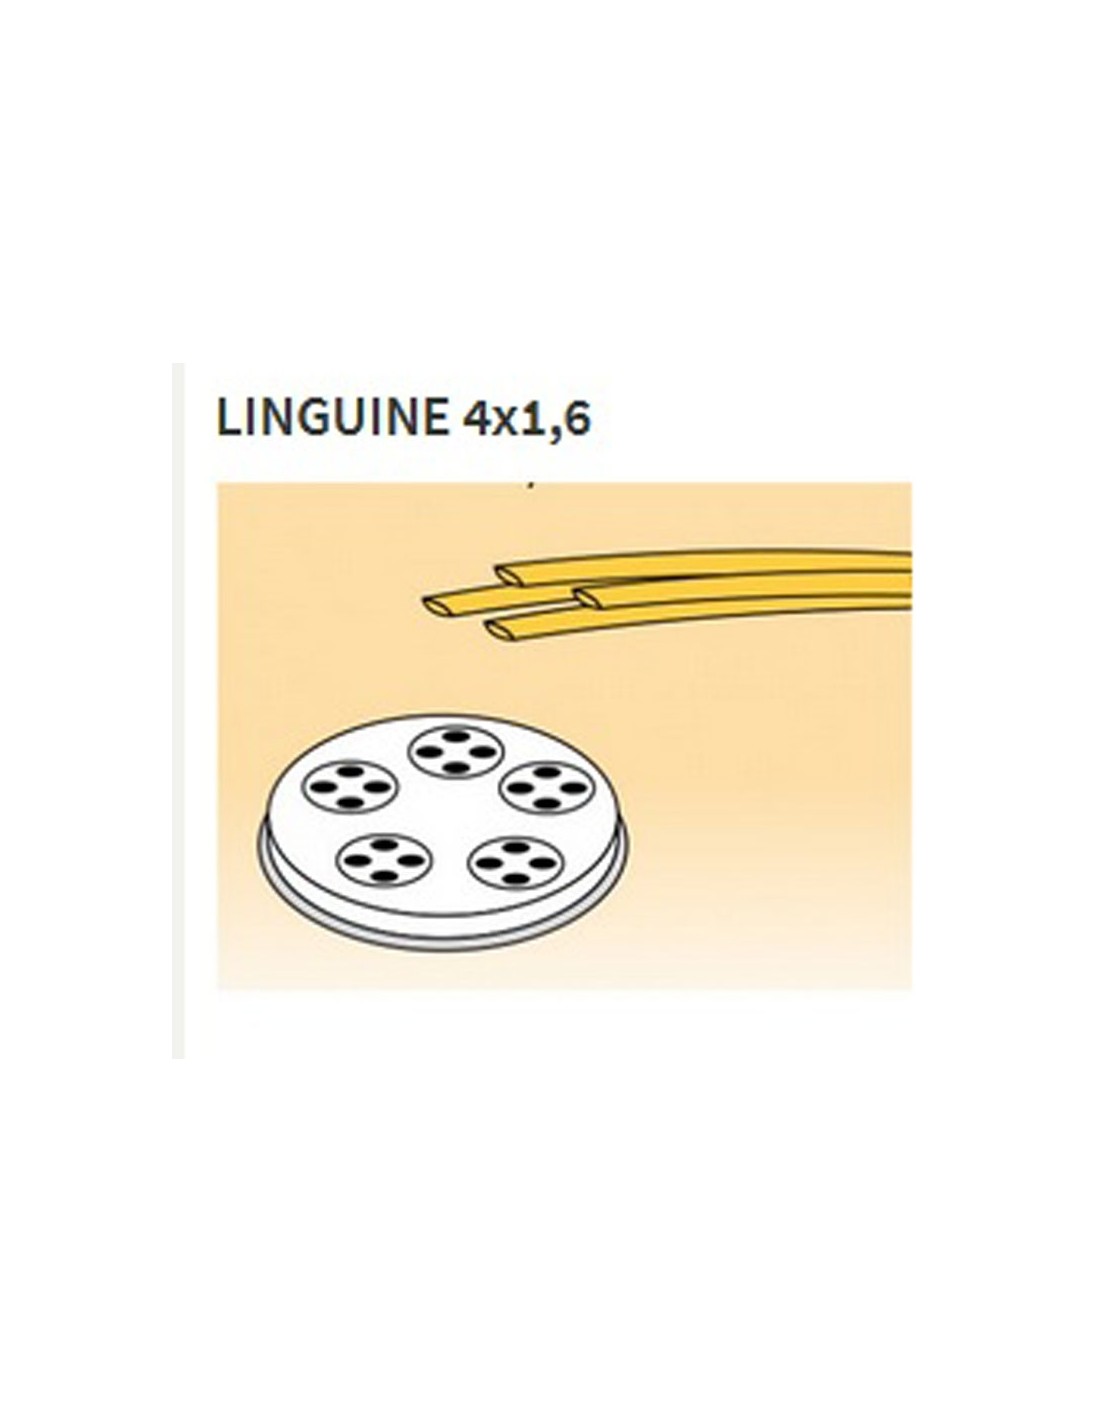 Matrices de aleación de latón de varias formas - Bronce - Para máquina de pasta fresca modelo MPF15 - Linguine 4 x 1,6 mm 3